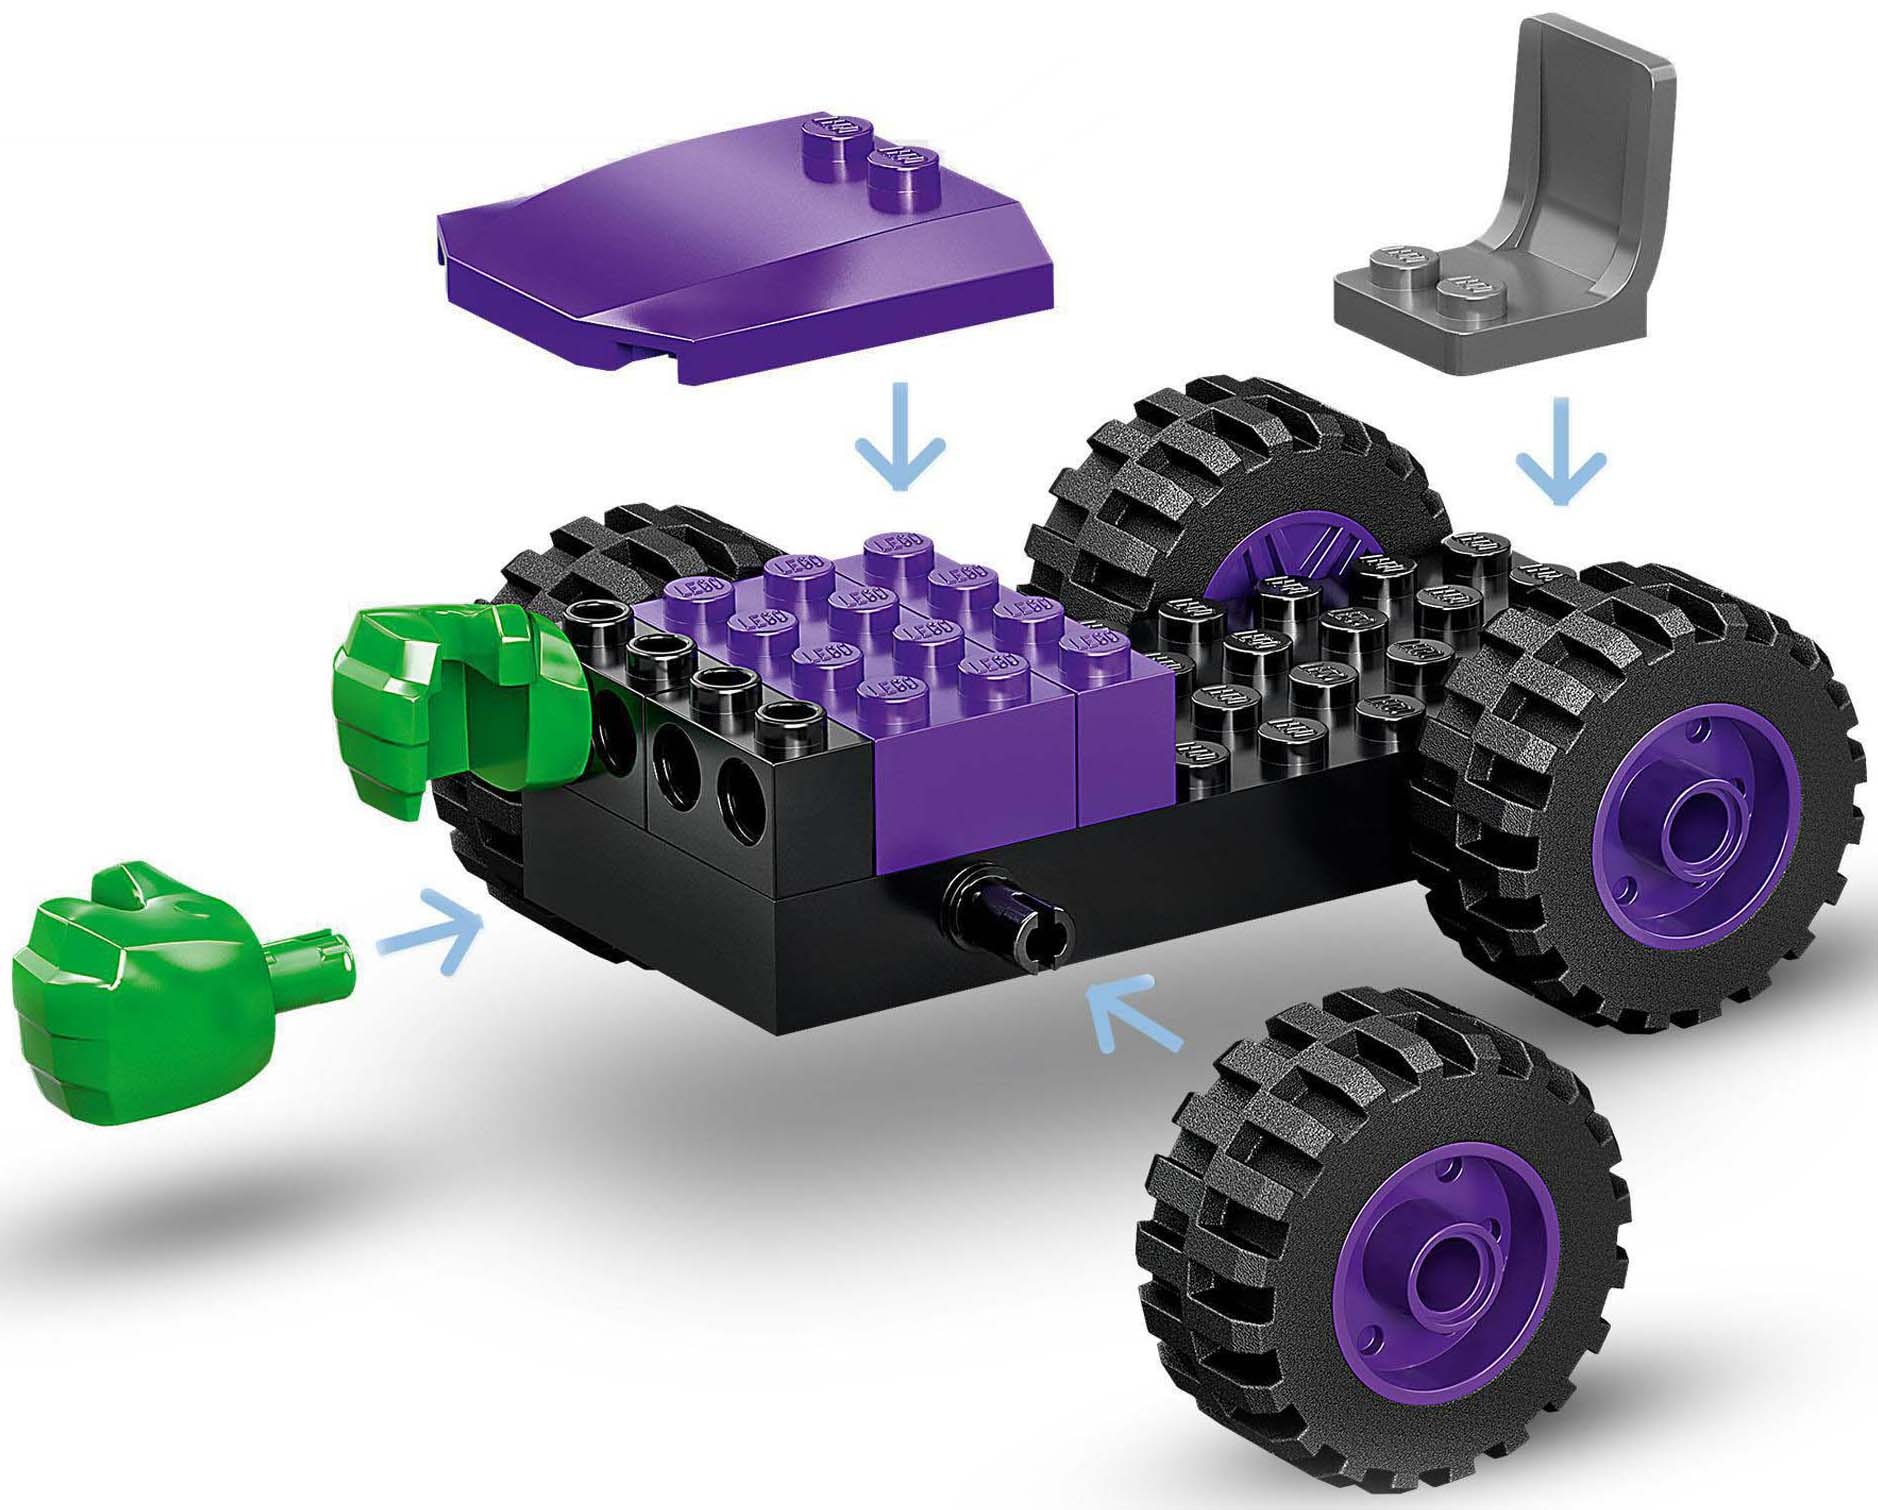 LEGO® Konstruktionsspielsteine »Hulks und Rhinos Truck-Duell (10782), LEGO® Marvel«, (110 St.)